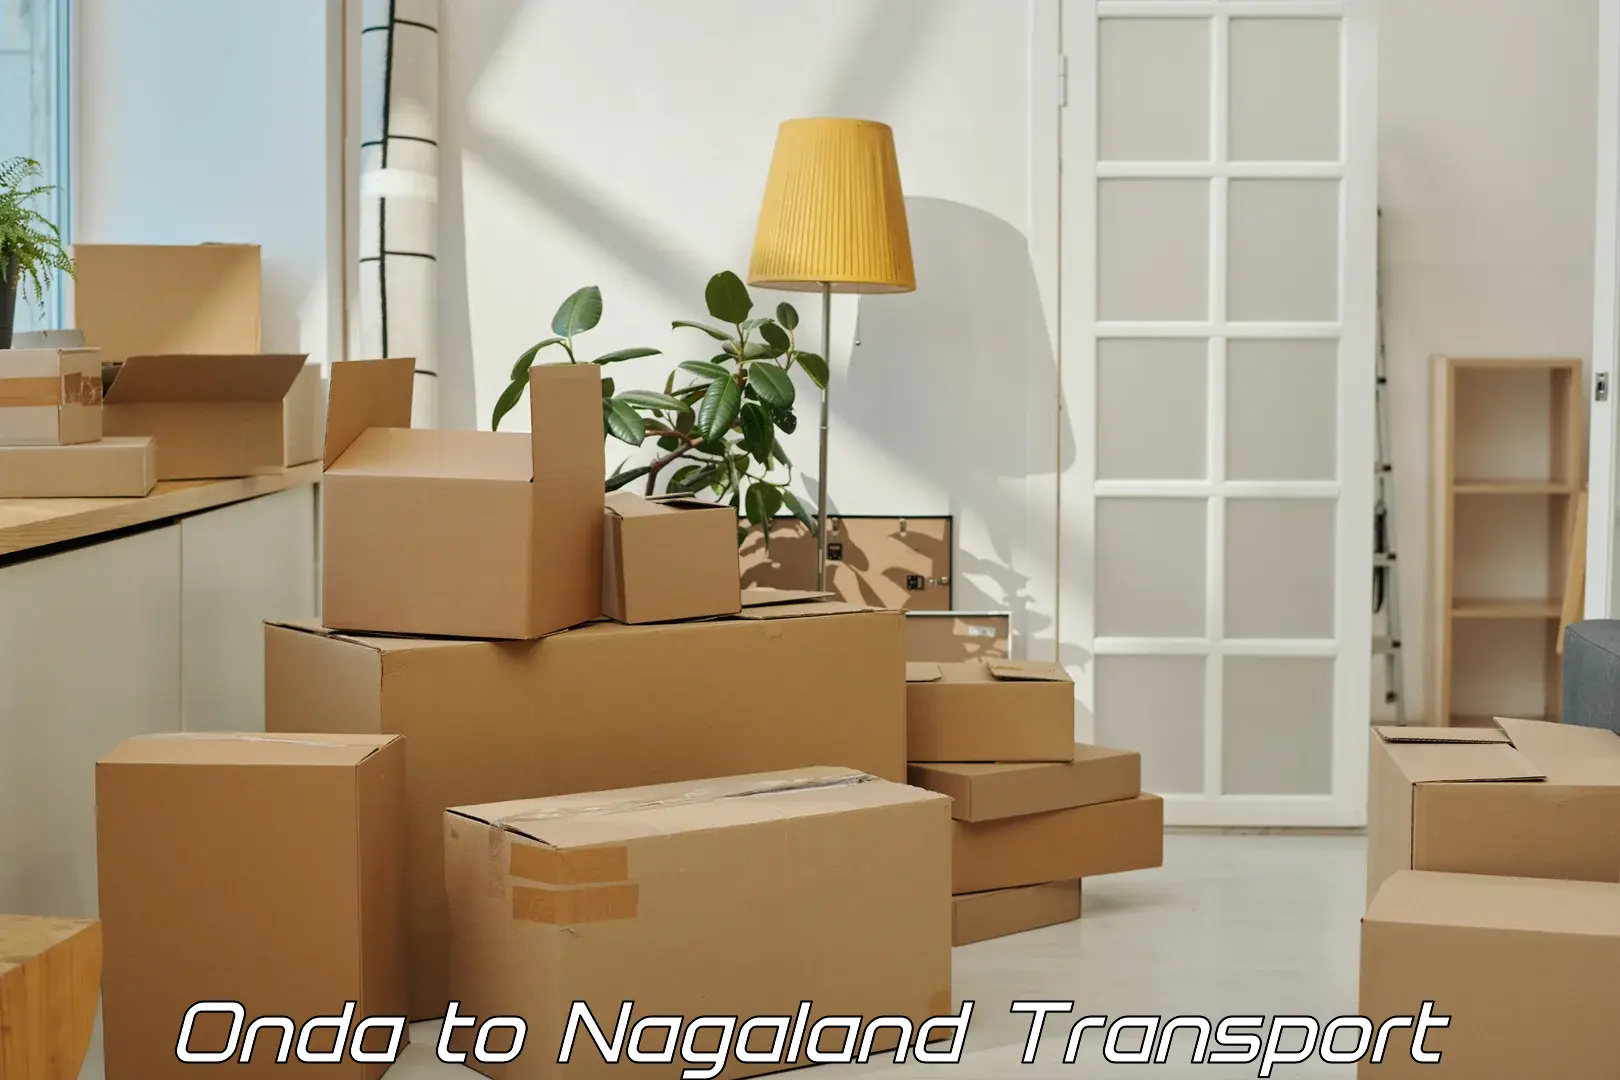 India truck logistics services Onda to Nagaland